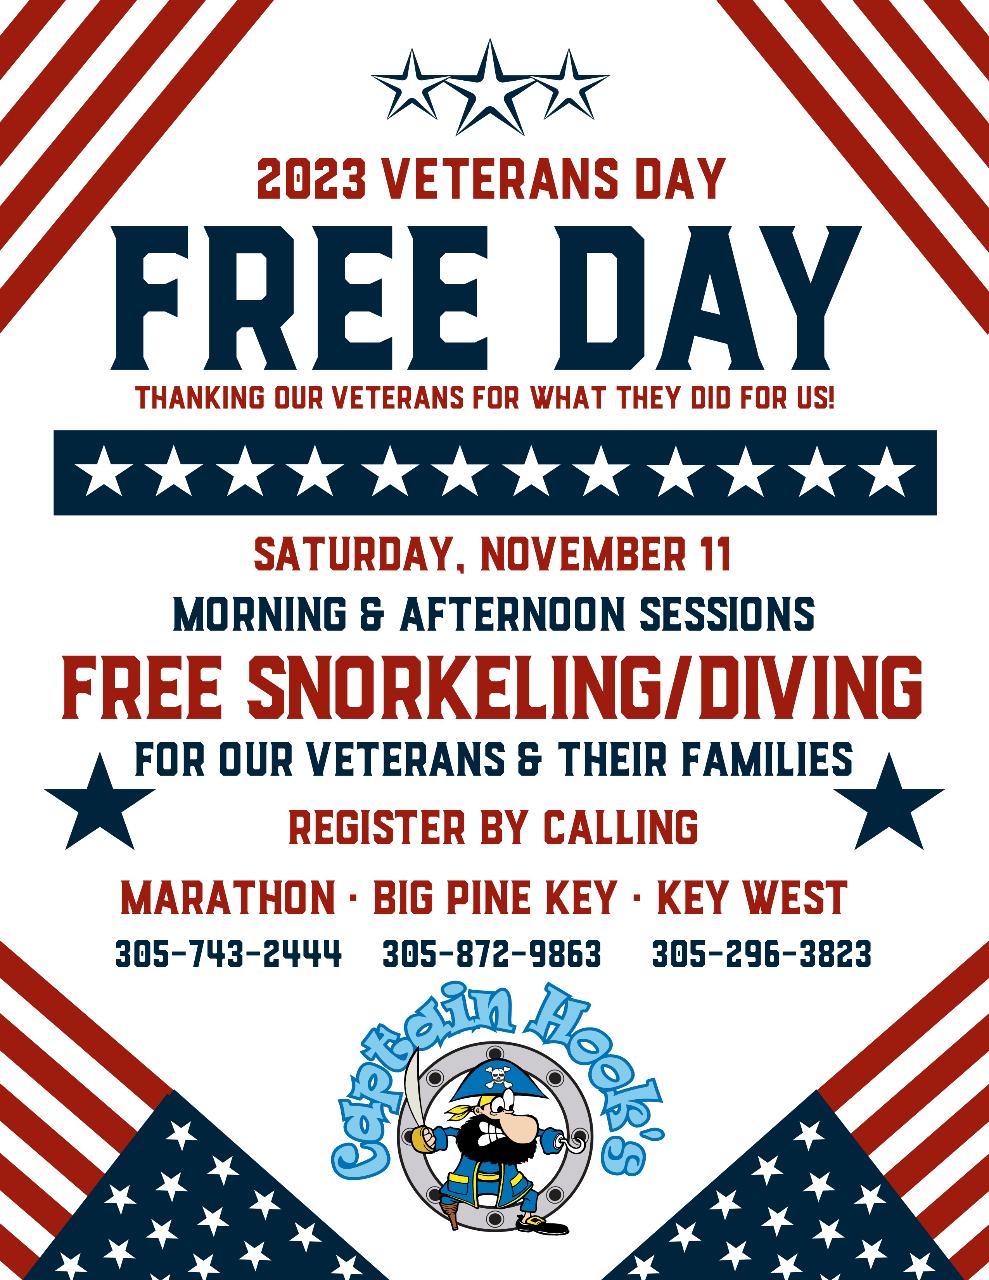 Veterans Day Free Day Snorkel Trip - Marathon